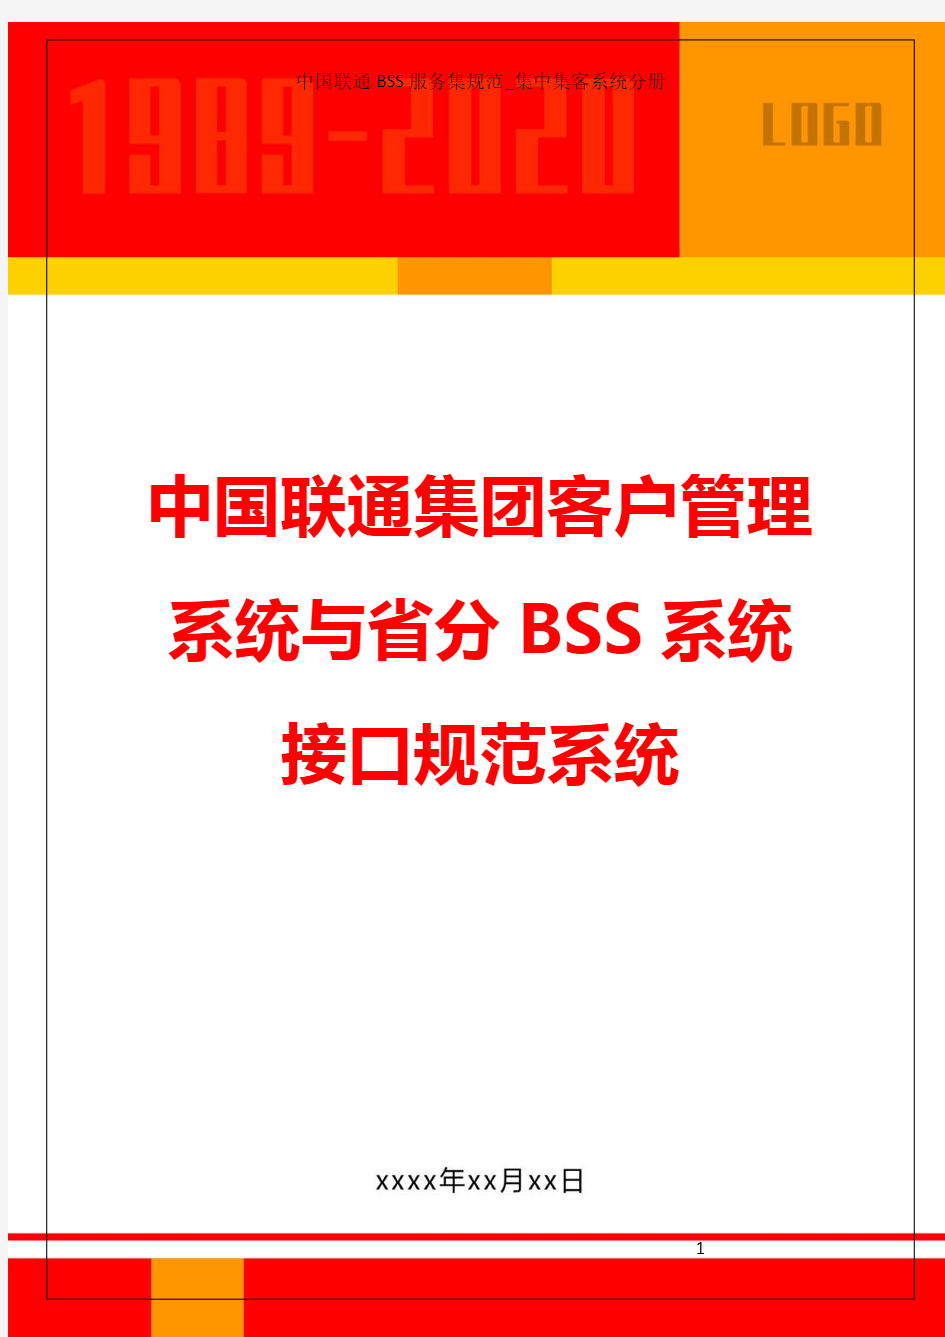 中国联通集团客户管理系统与省分BSS系统接口规范系统